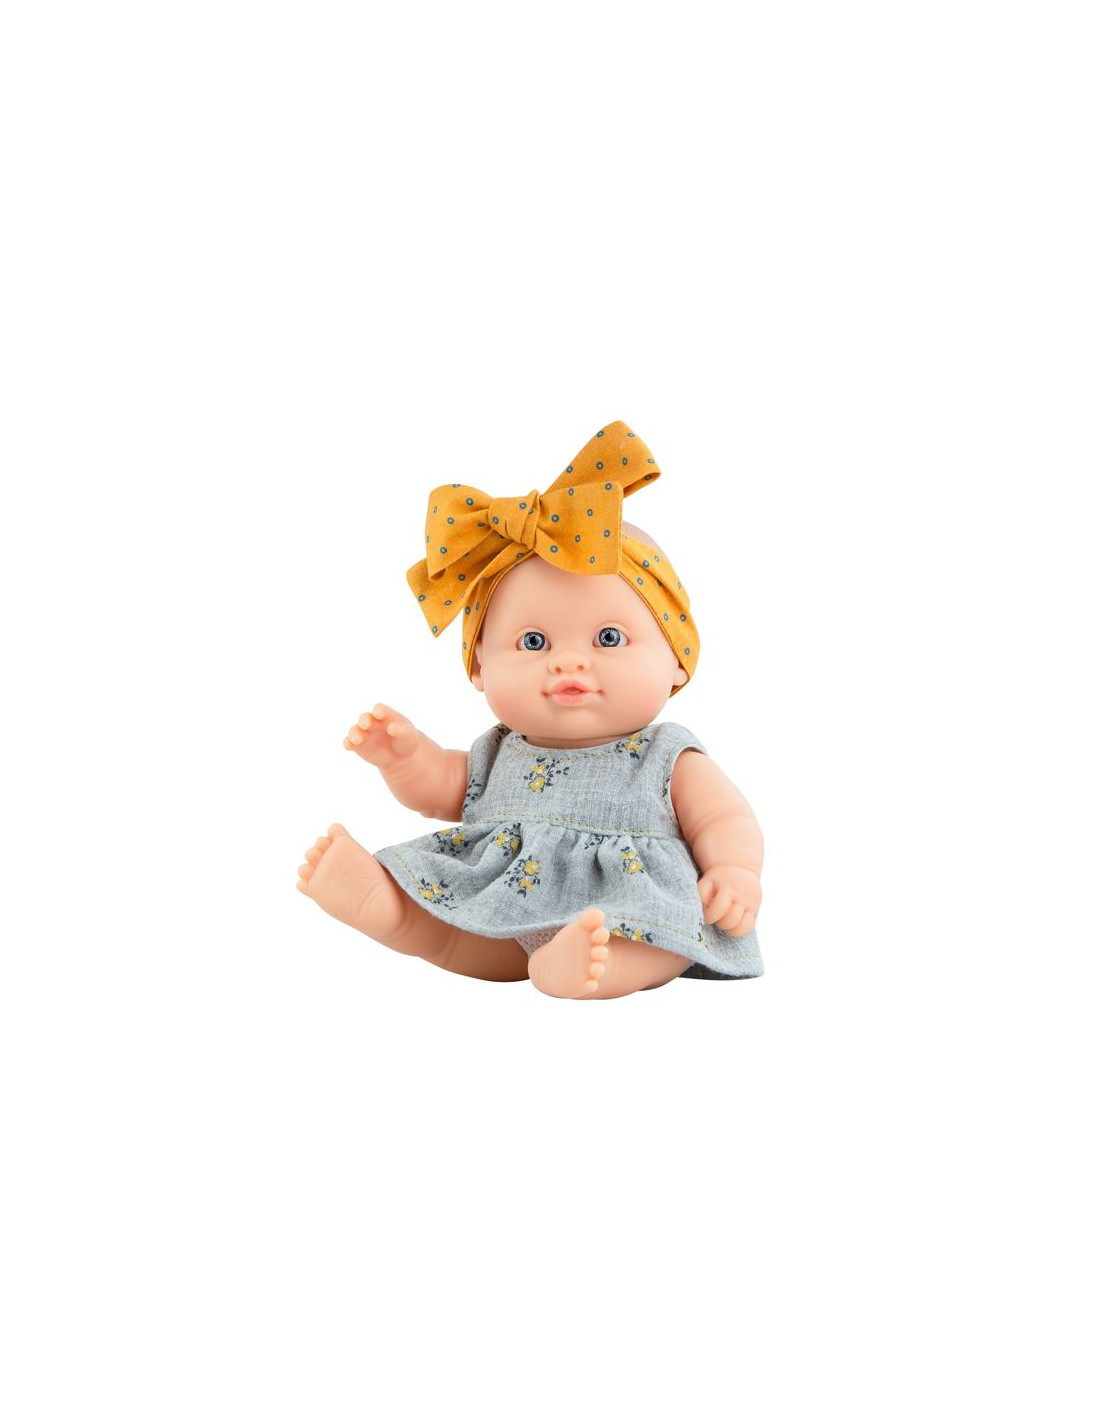 Coudre une poupée de chiffon : stimulez l'imagination de vos enfants !